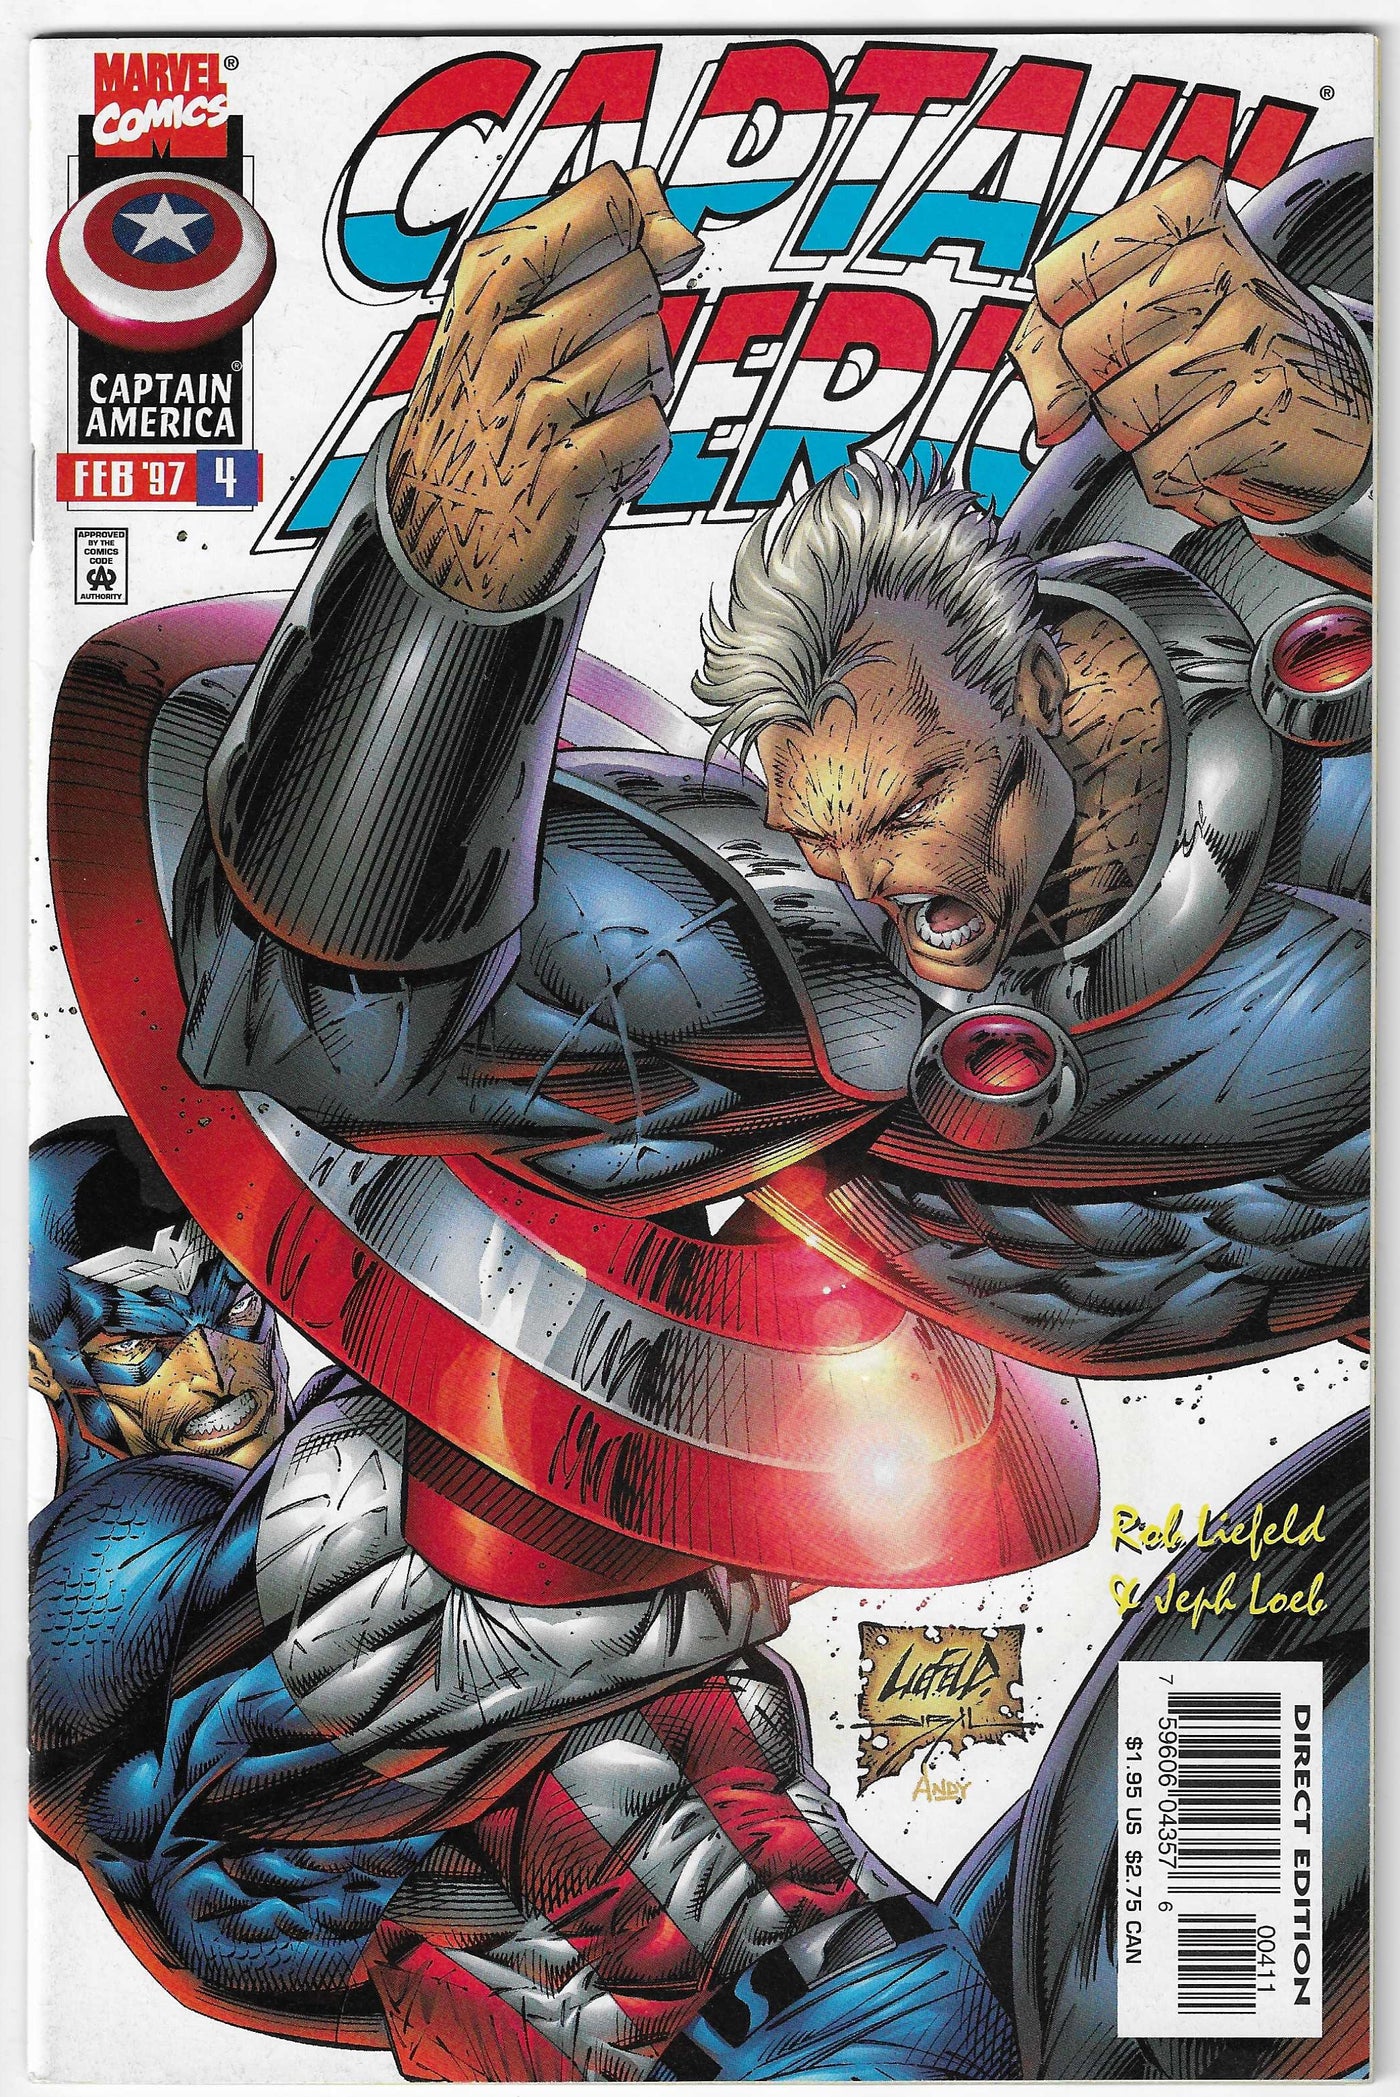 Captain America (Volume 2) #4